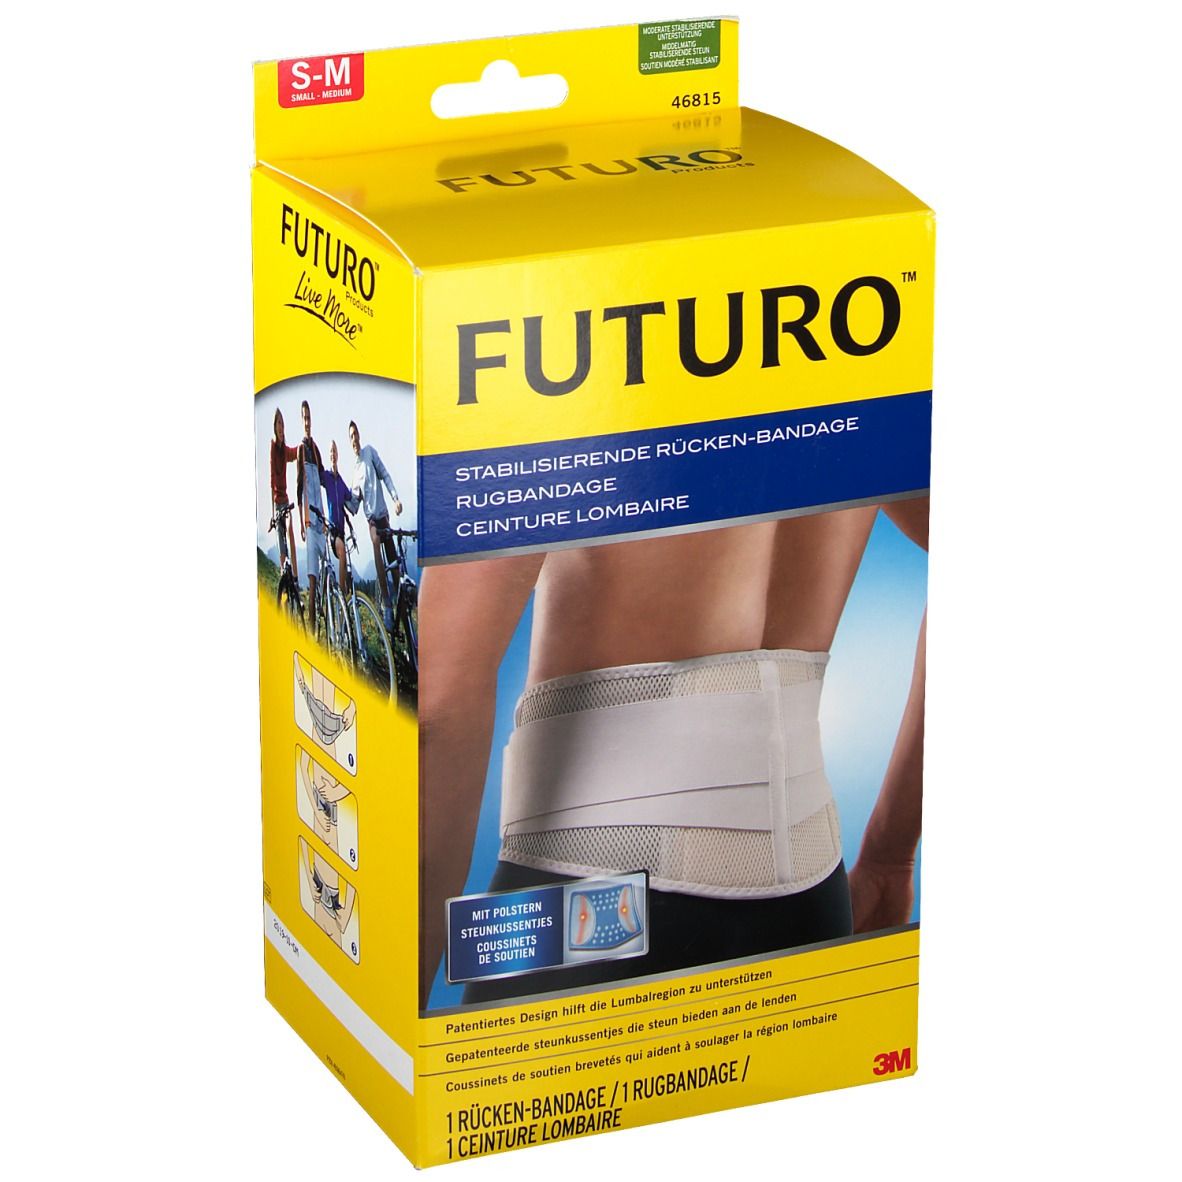 FUTURO™ stabilisierende Rücken-Bandage S-M